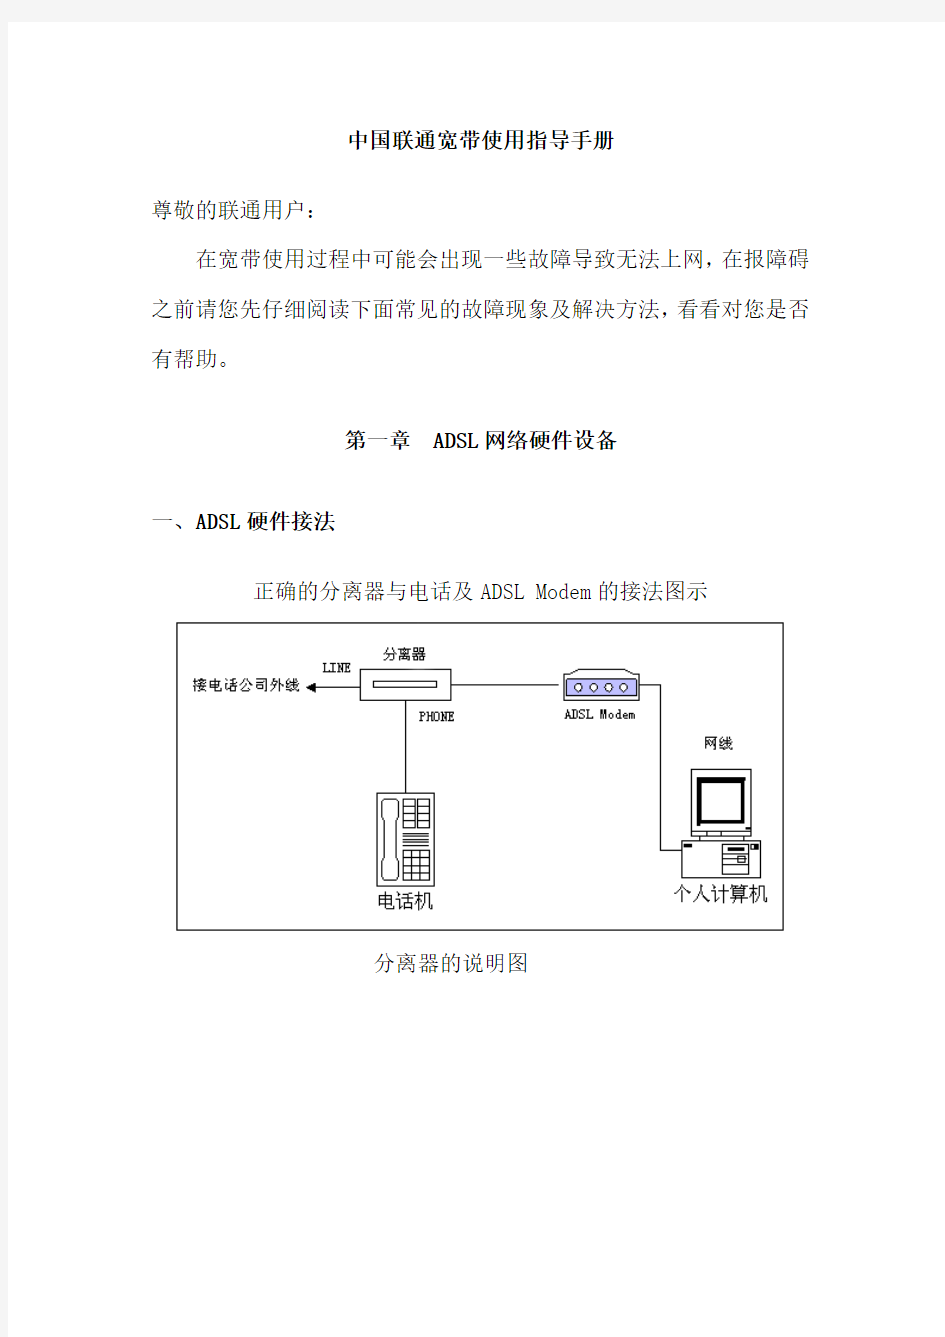 中国联通宽带使用指导手册(图文版)